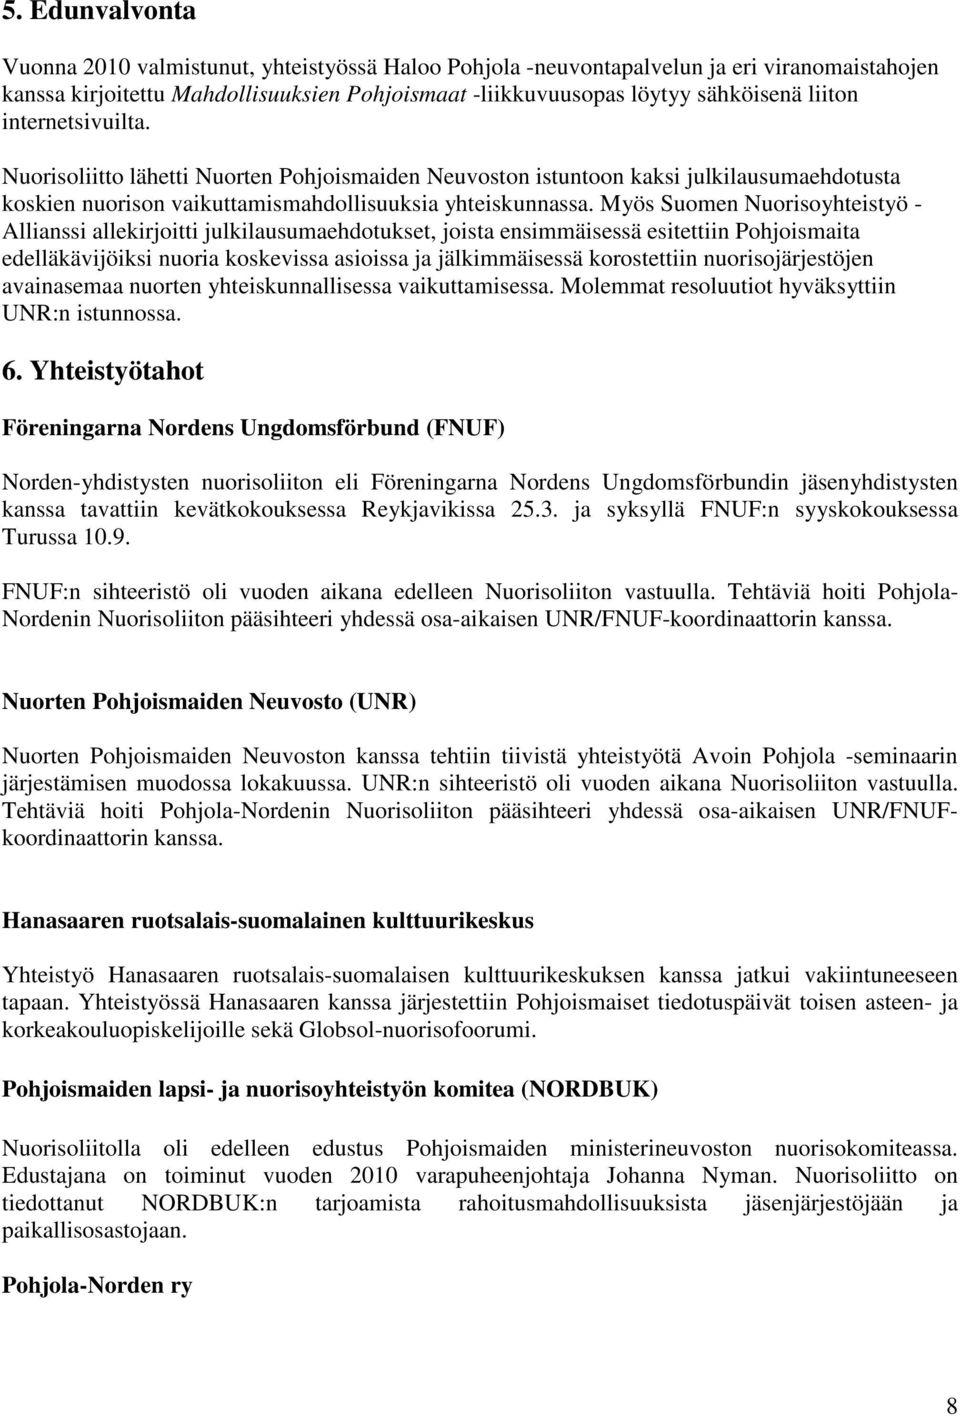 Myös Suomen Nuorisoyhteistyö - Allianssi allekirjoitti julkilausumaehdotukset, joista ensimmäisessä esitettiin Pohjoismaita edelläkävijöiksi nuoria koskevissa asioissa ja jälkimmäisessä korostettiin